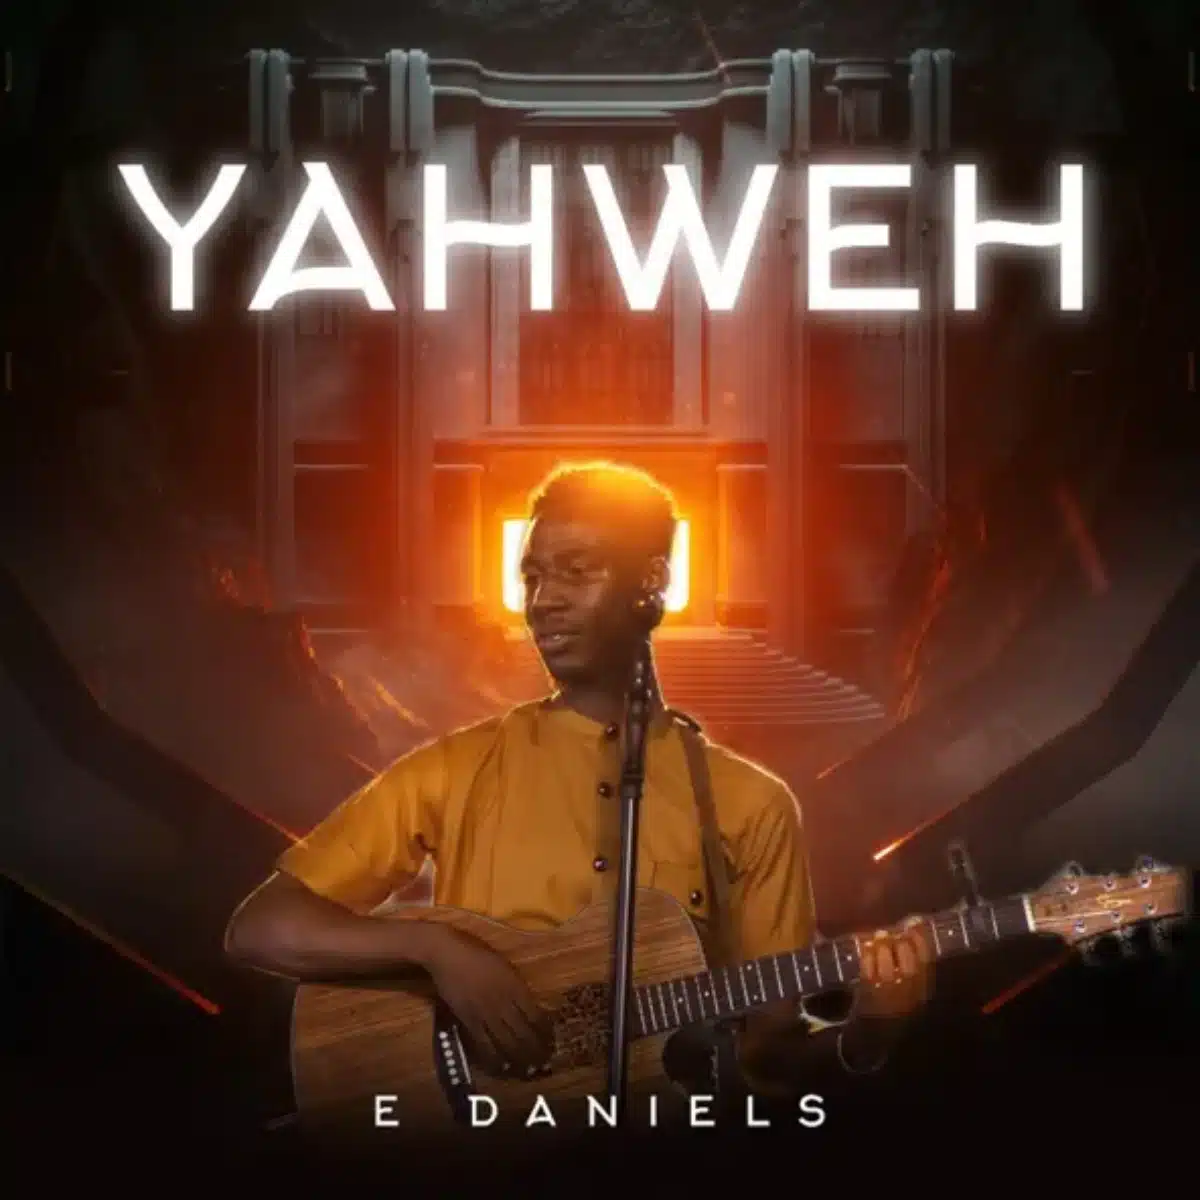 DOWNLOAD: E Daniels – “Yahweh” Mp3